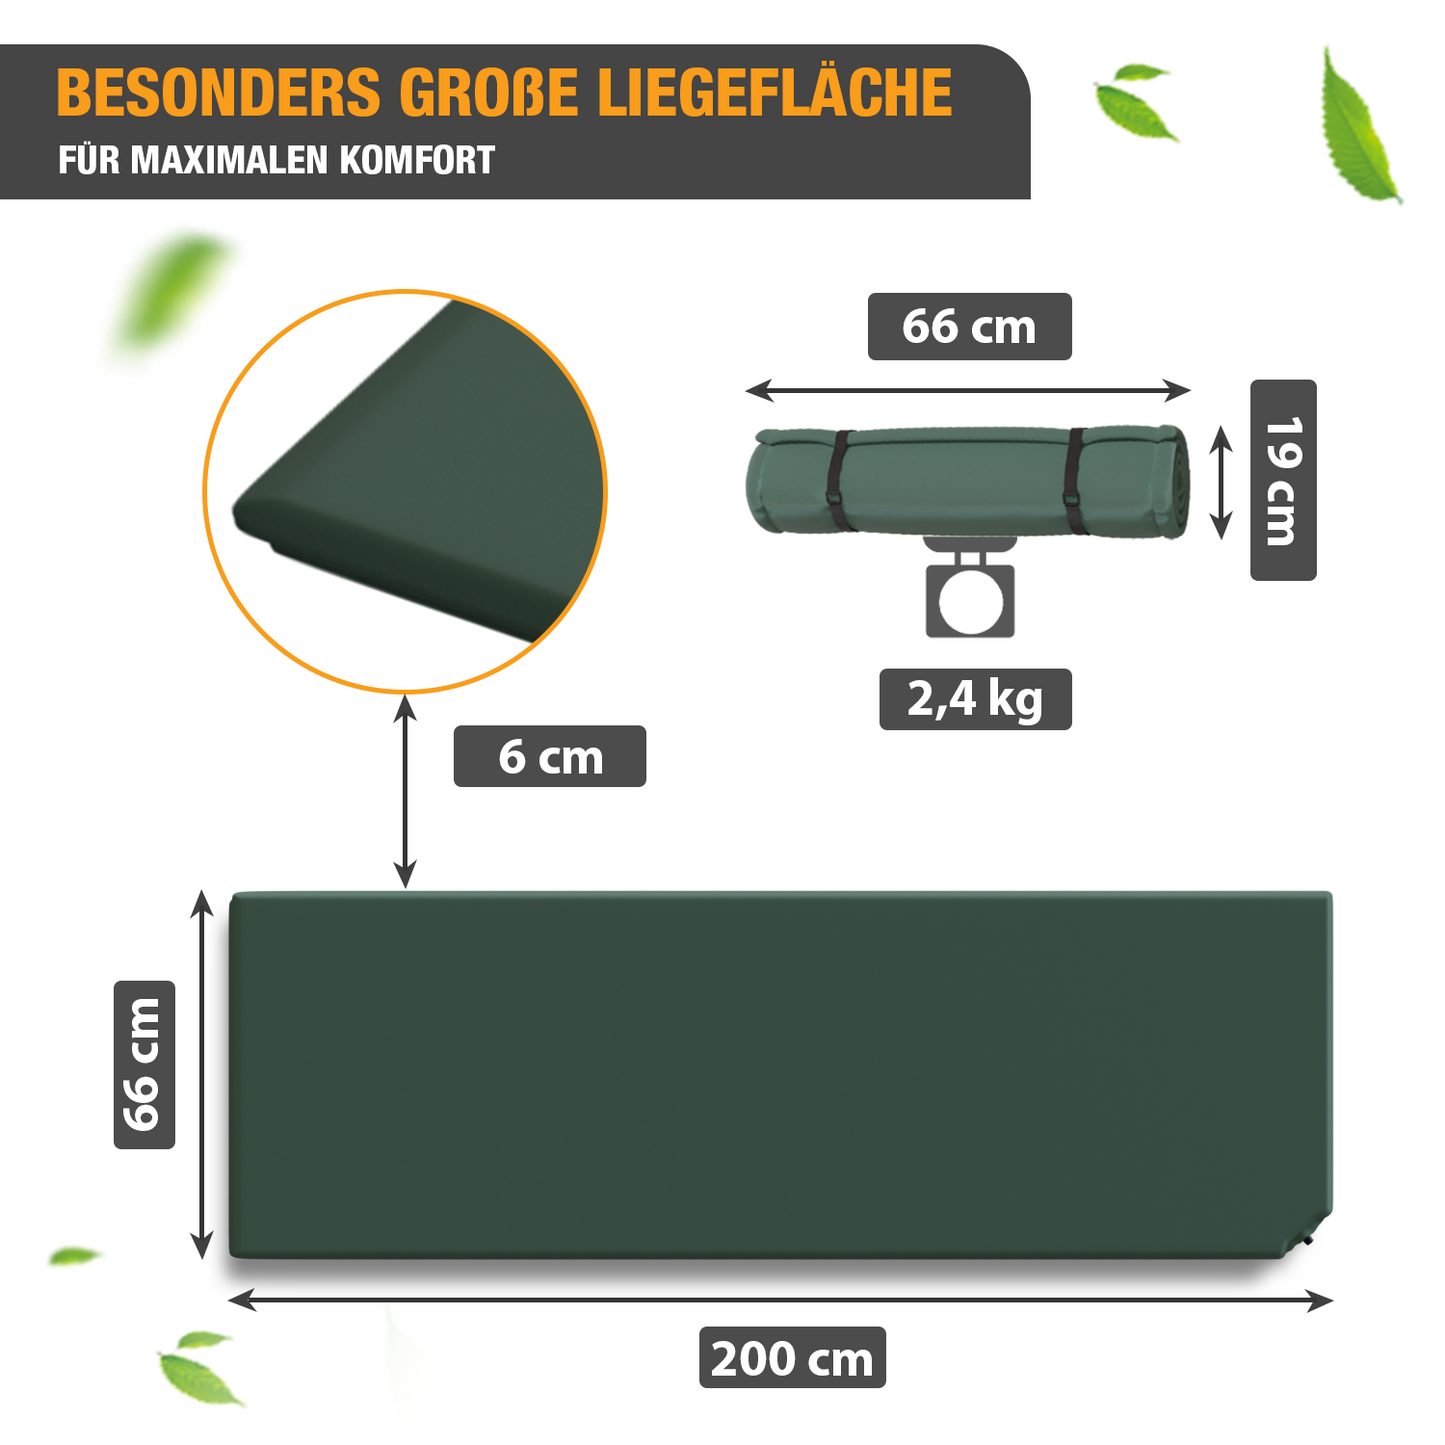 Isomatte selbstaufblasend - Luftbett - 200 x 66 x 6 cm - Luftmatratze - grün